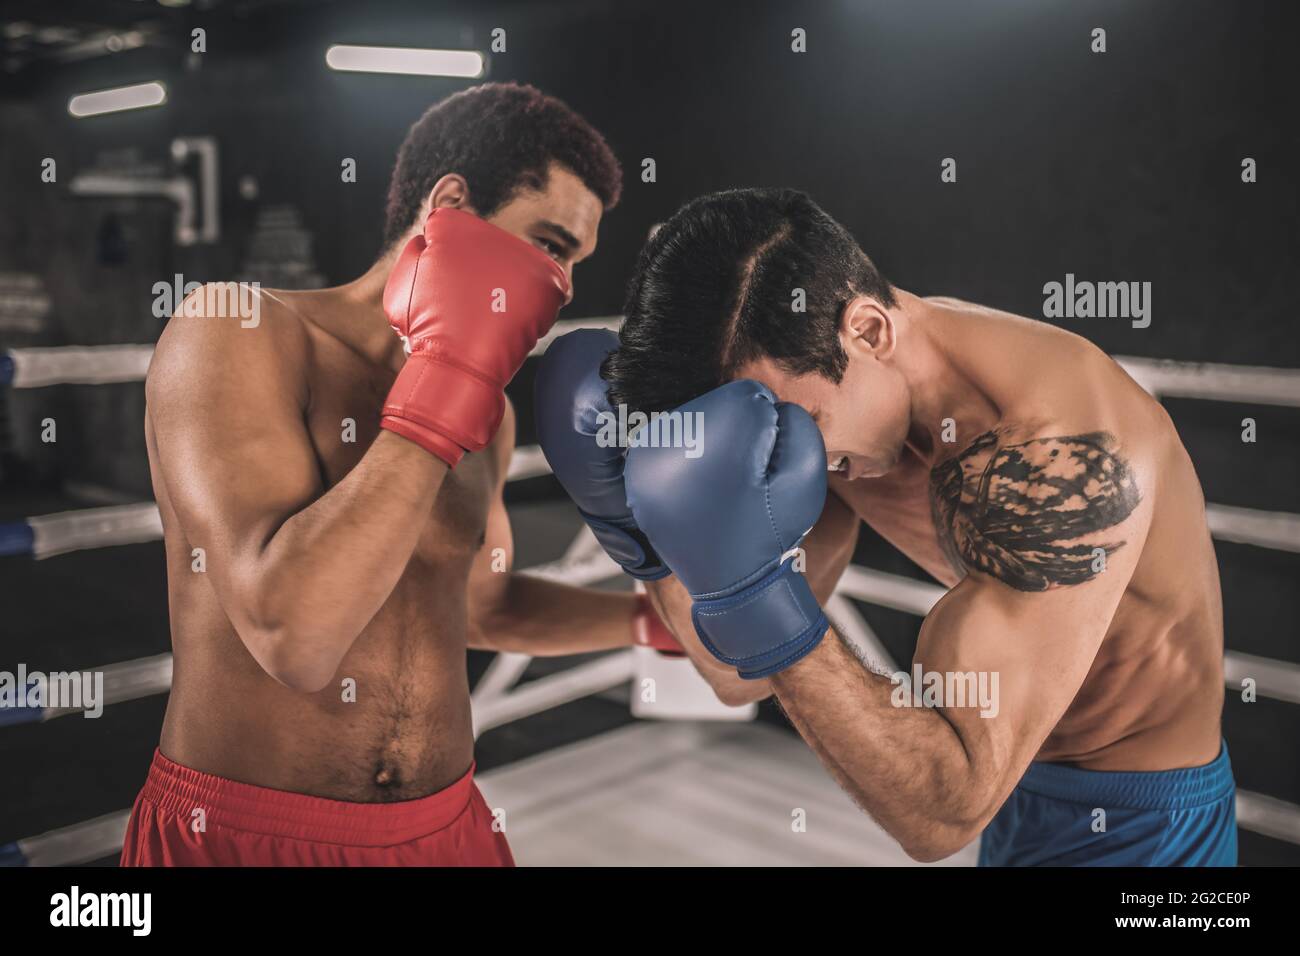 Deux kickboxers se battent sur un ring de boxe et ont l'air agressif Banque D'Images